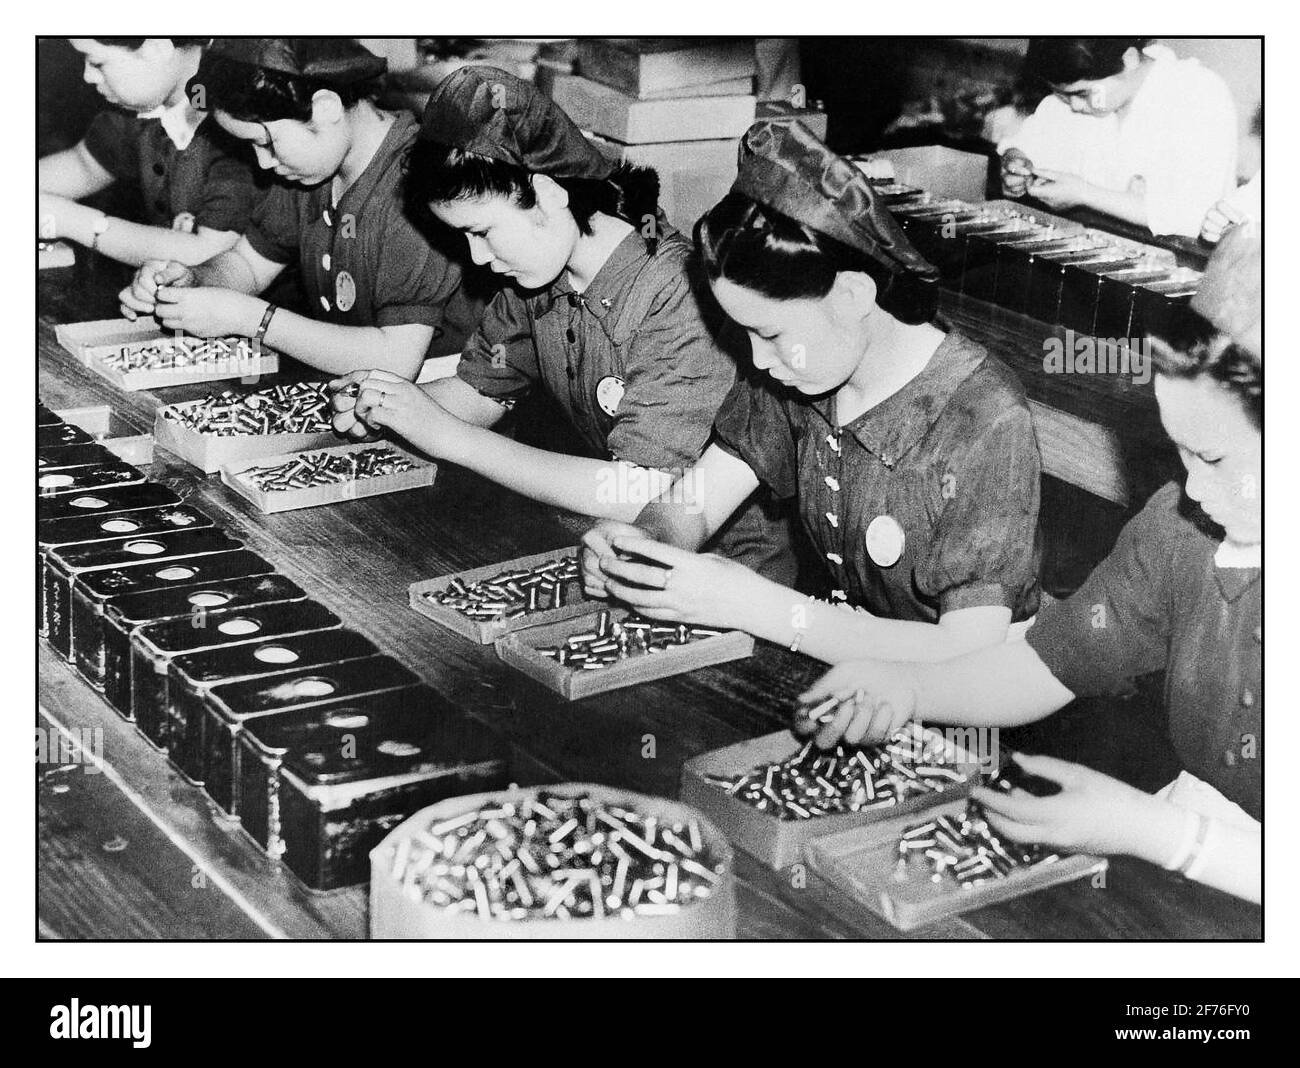 JAPON WW2 MUNITIONS POUR LE TRAVAIL DE GUERRE DES FEMMES 1941, JAPON. WW2 armement Guerre production avec des femmes travaillant dans une usine de munitions japonaise. Deuxième Guerre mondiale deuxième Guerre mondiale Banque D'Images